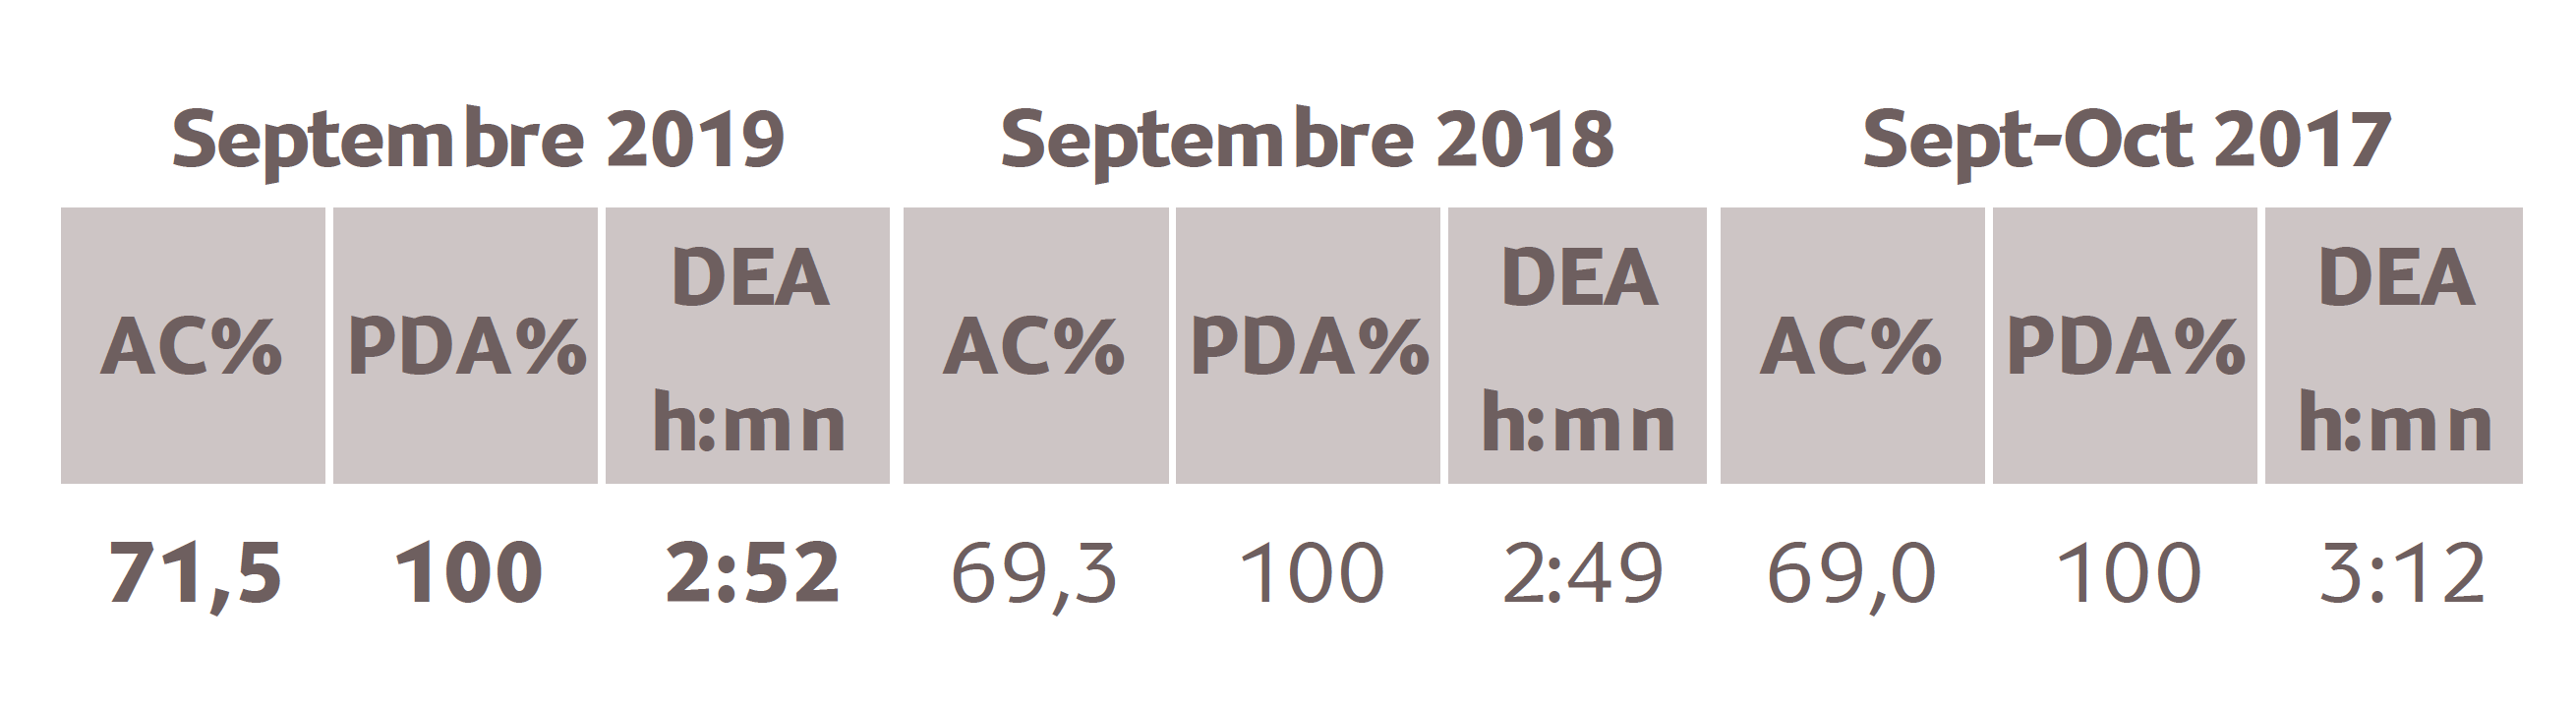 Source : Médiamétrie – Etude Nouvelle-Calédonie – Septembre 2019 - 13 ans et plus - Copyright Médiamétrie - Tous droits réservés